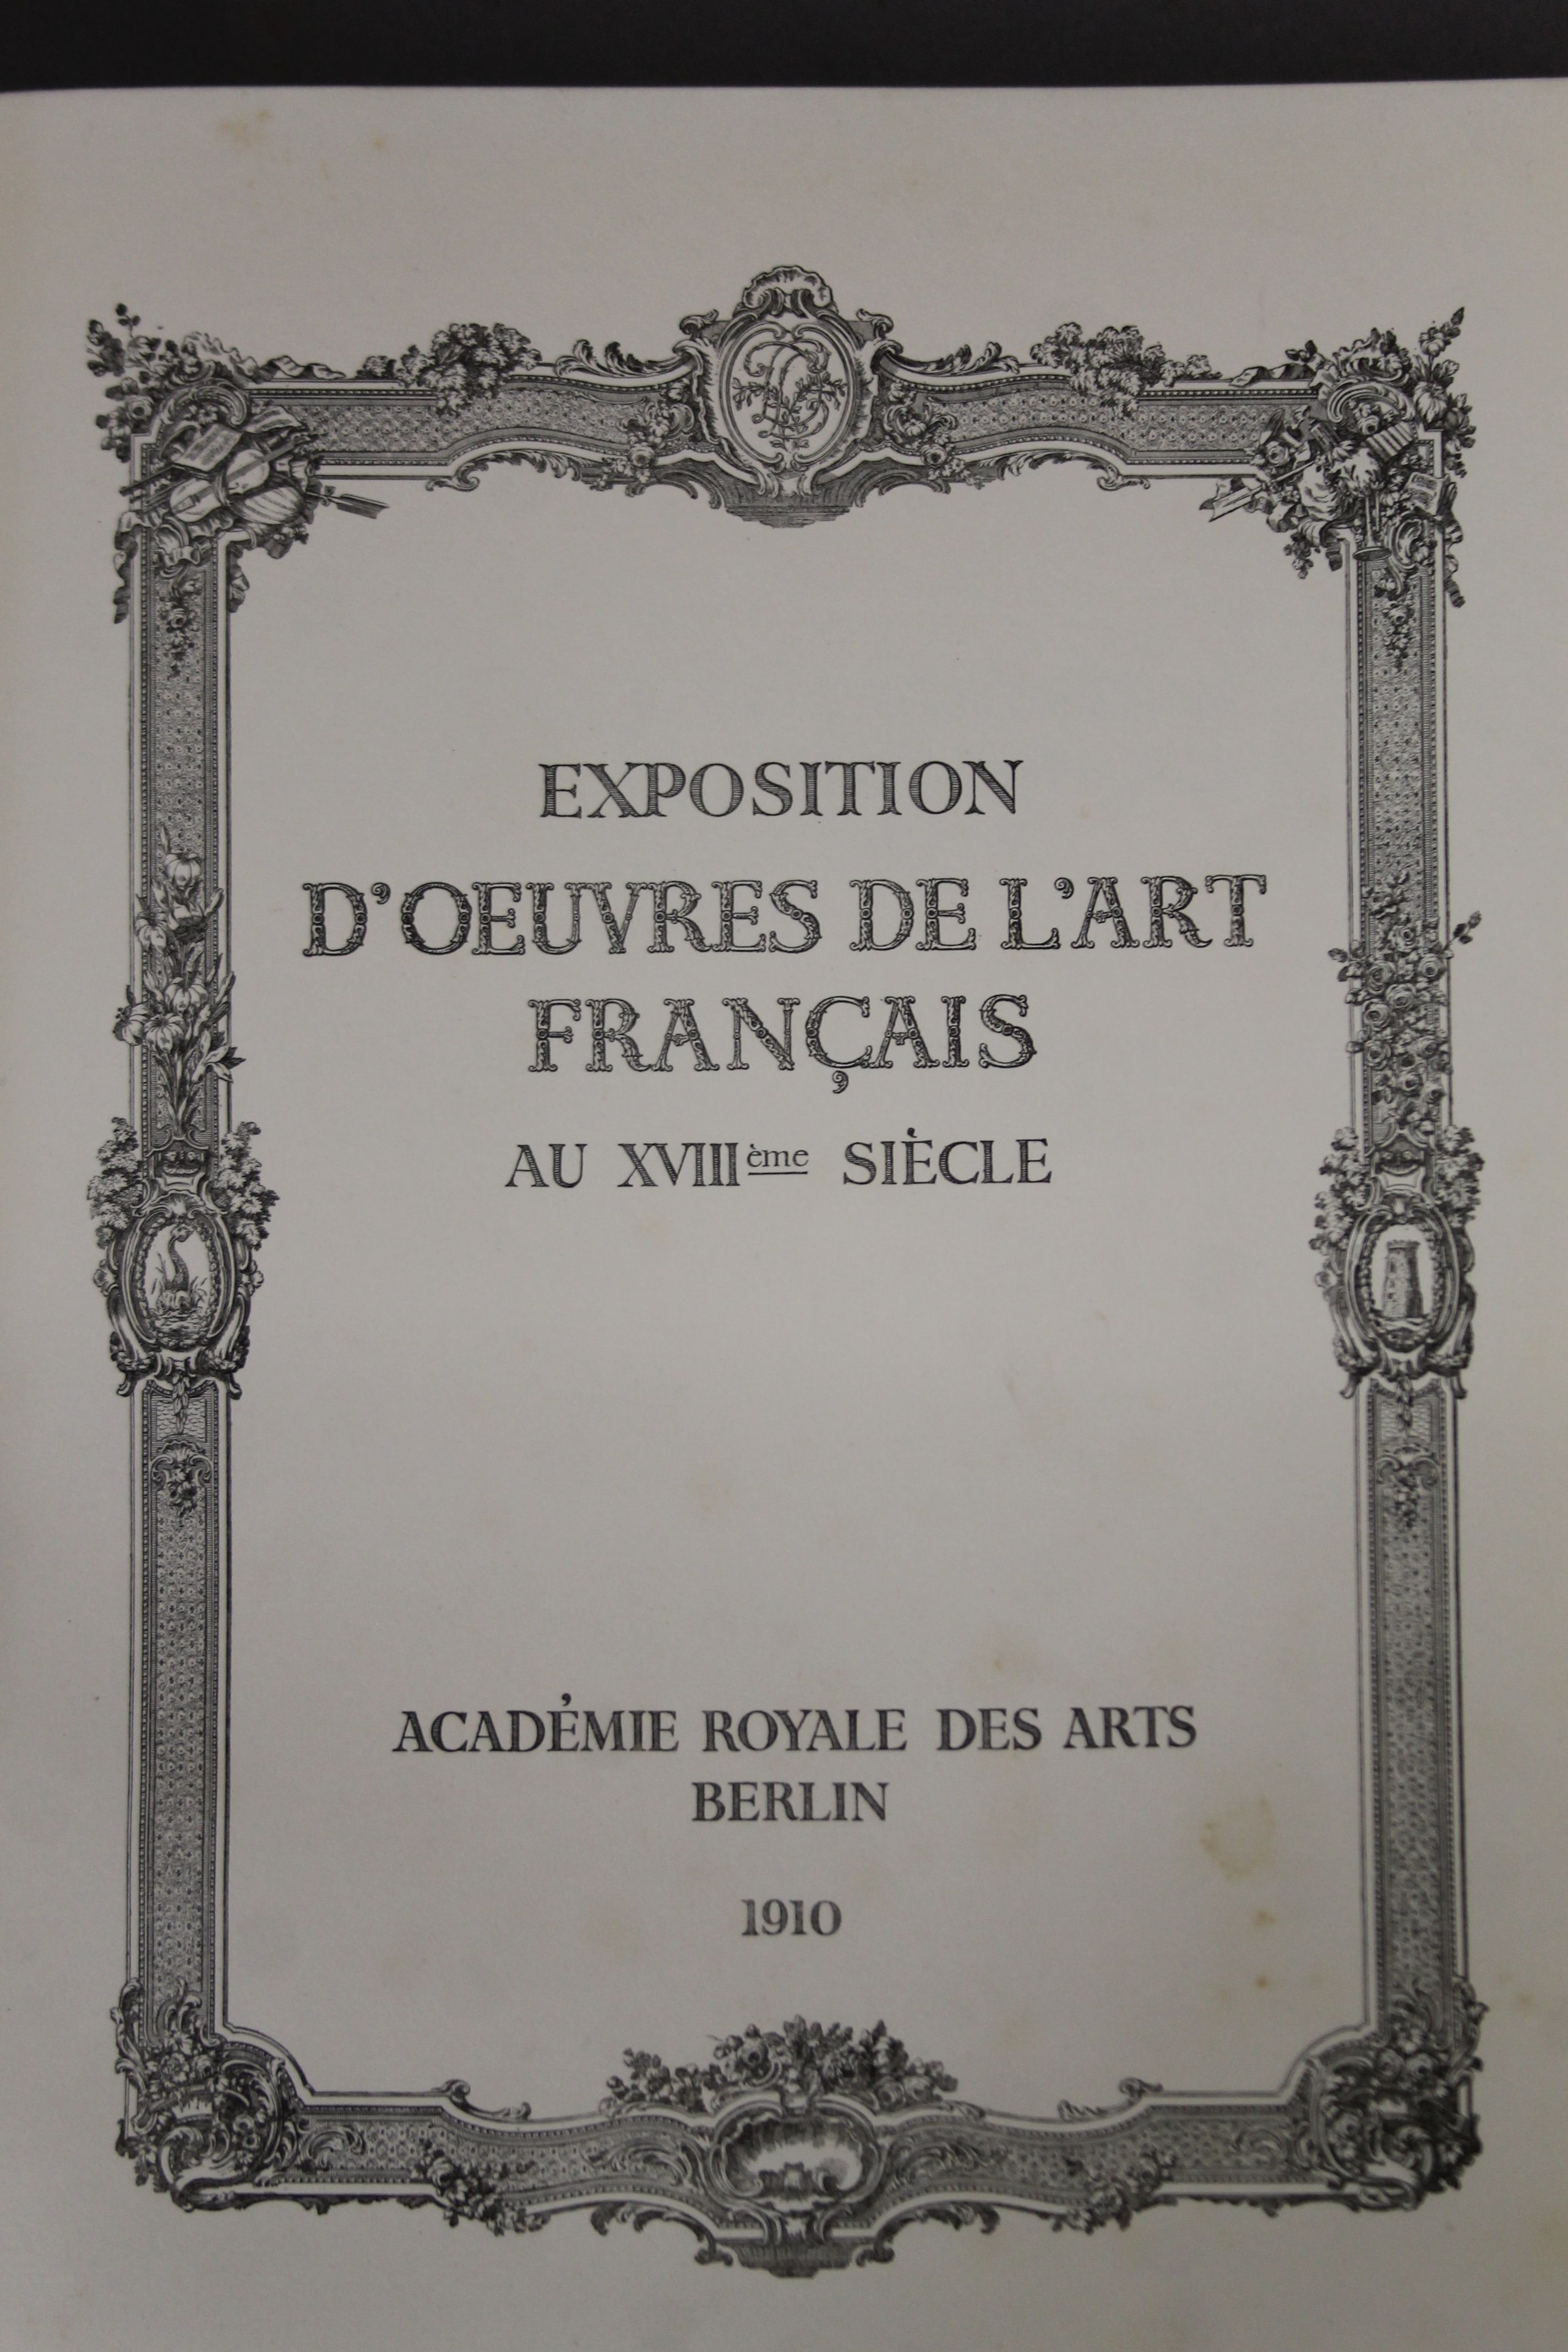 Exposition d'Oeuvres de l'Art Francais au XVIIIeme siecle, folio, - Image 6 of 30